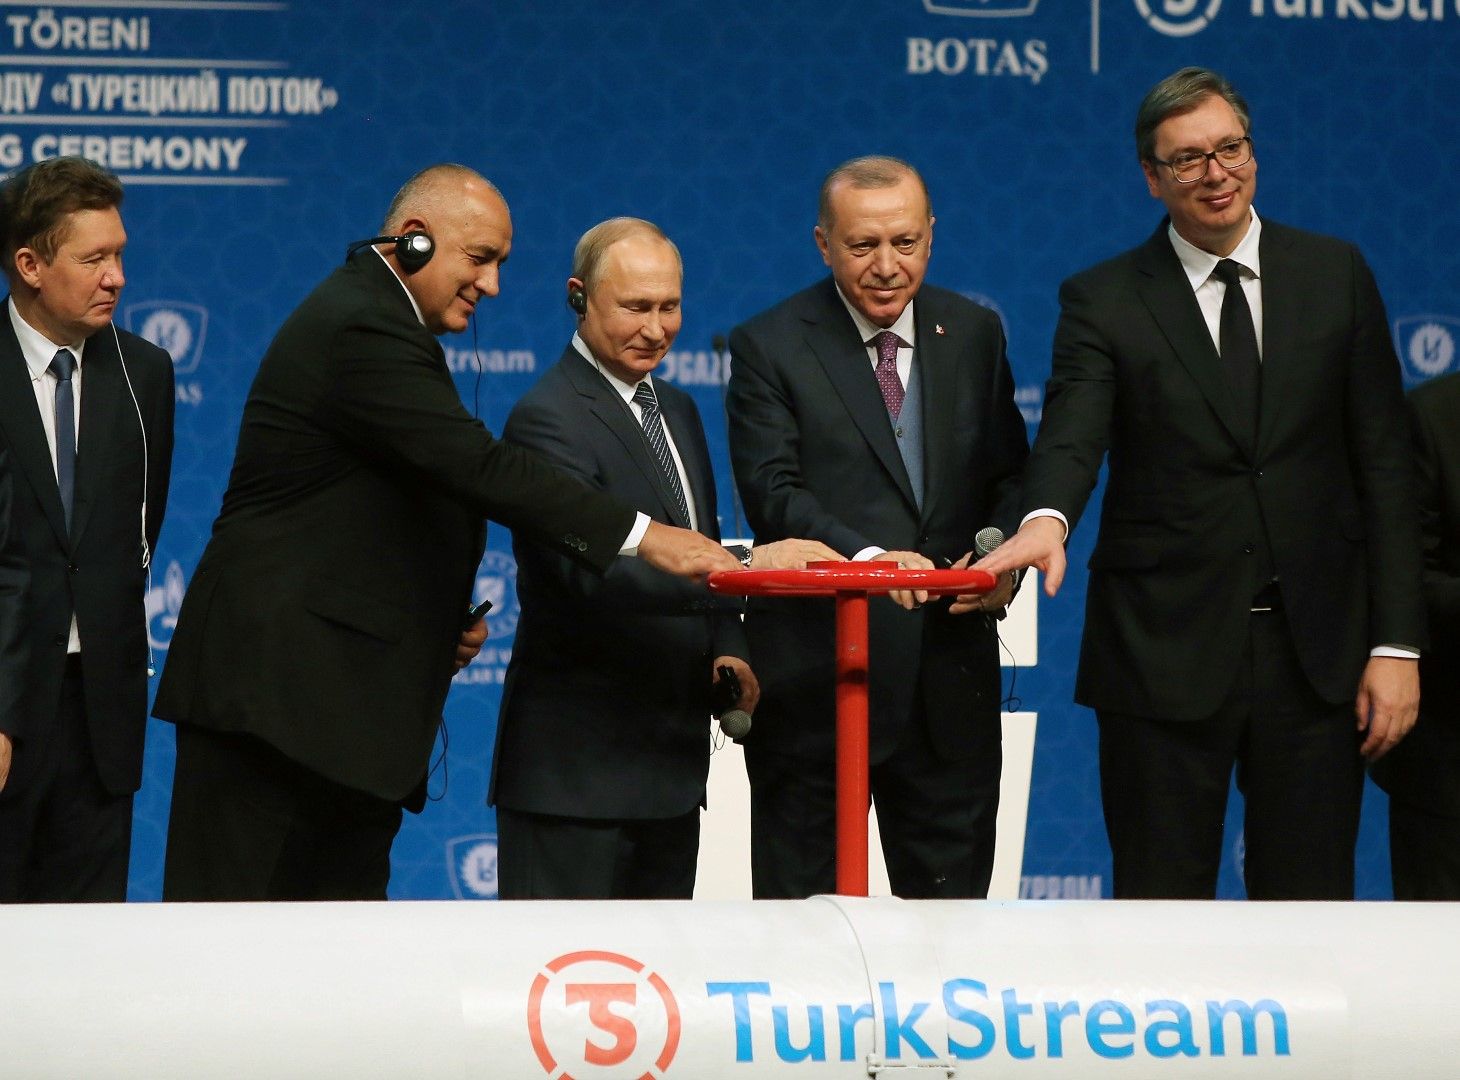 8 януари 2020 г., Истанбул. Тържествена церемония по пускането на "Турски поток", в която участват Бойко Борисов, Владимир Путин, Реджеп Тайип Ердоган и Александър Вучич